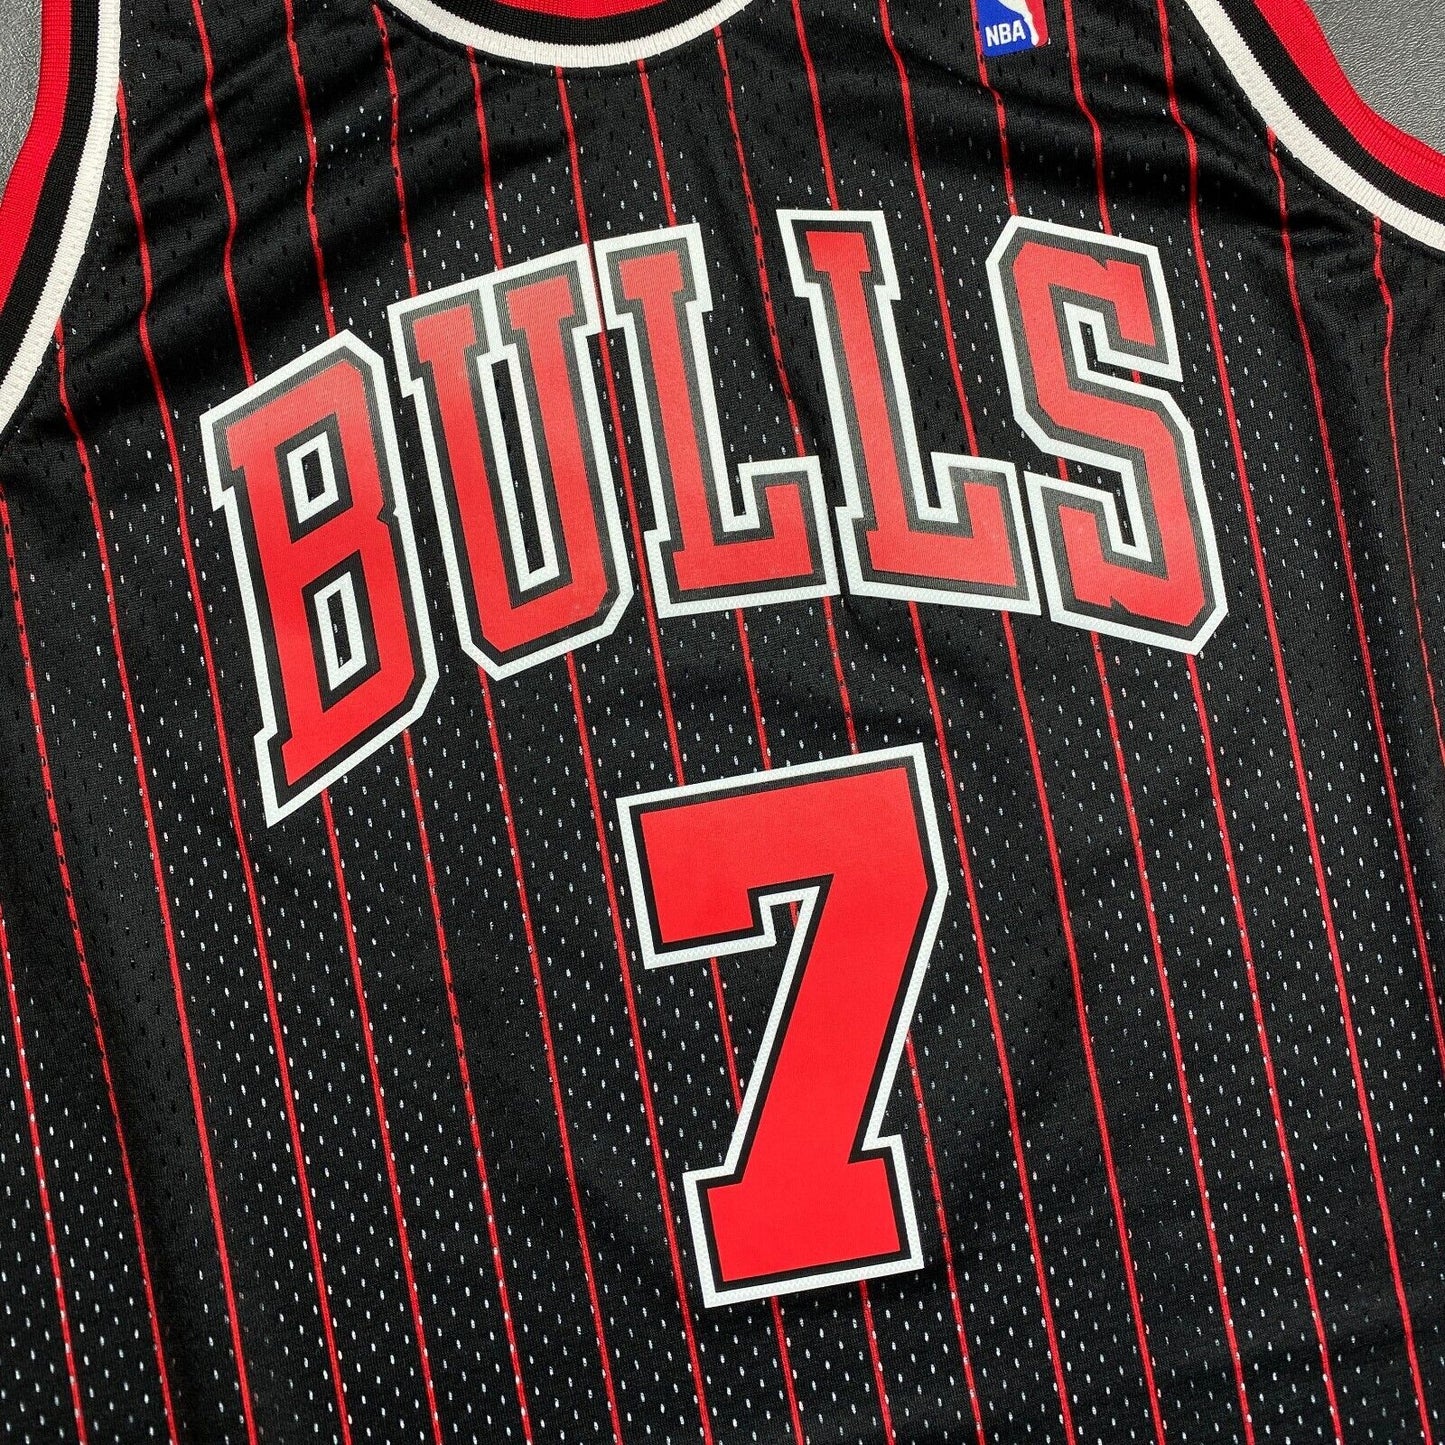 100% Authentic Toni Kukoc Mitchell Ness Chicago Bulls Signed Jersey COA JSA 2XL